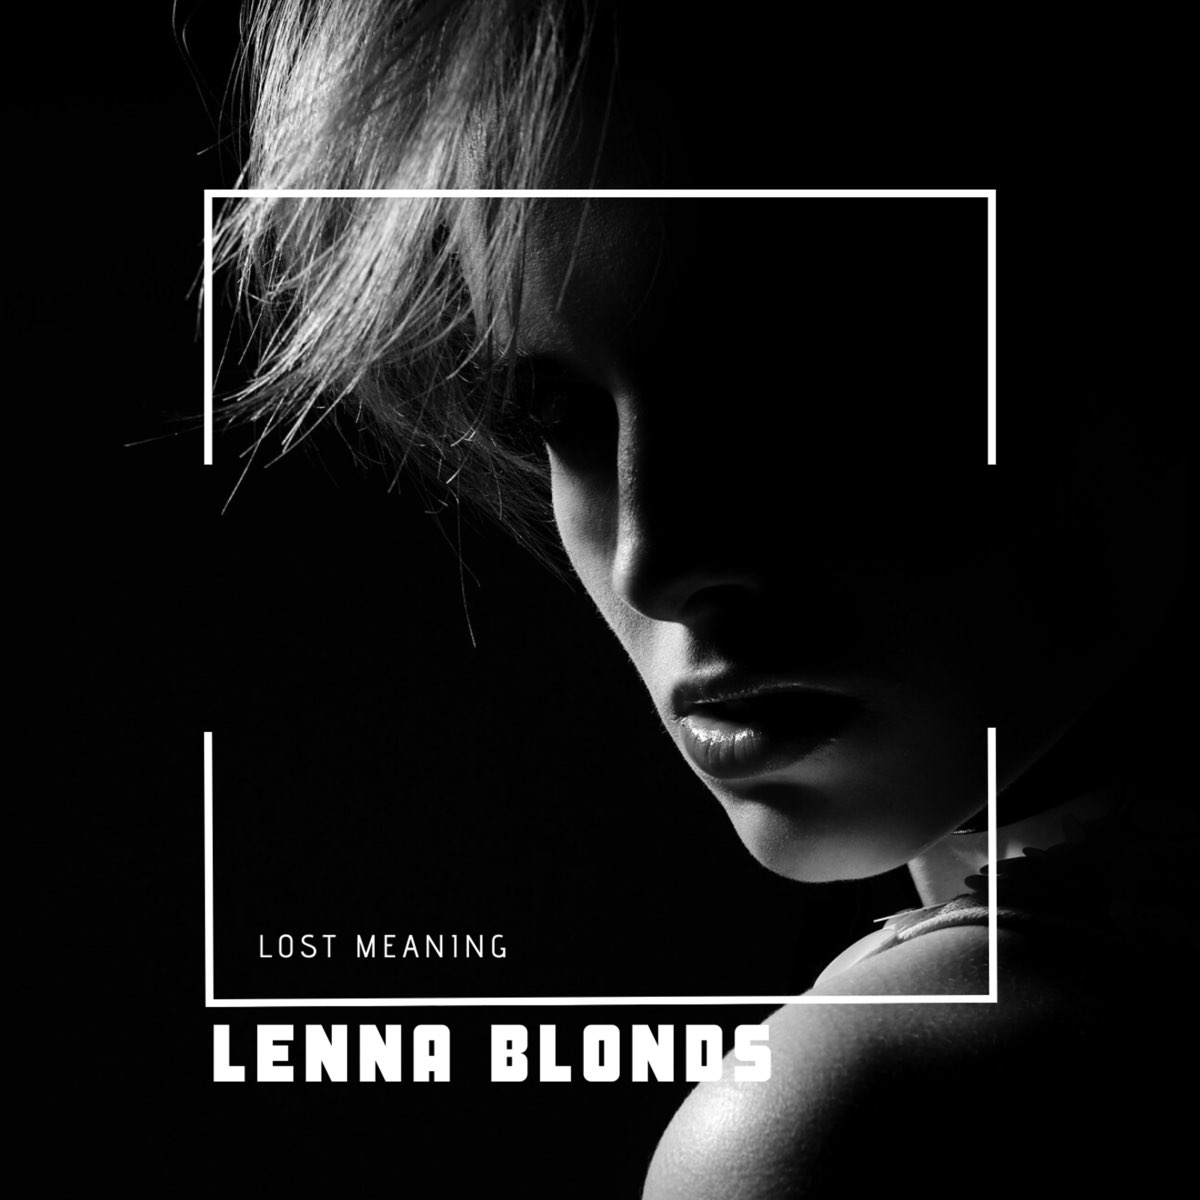 Альбом блонд. Дид блонд слушать. Альбом блонд слушать. Песня Lenna.